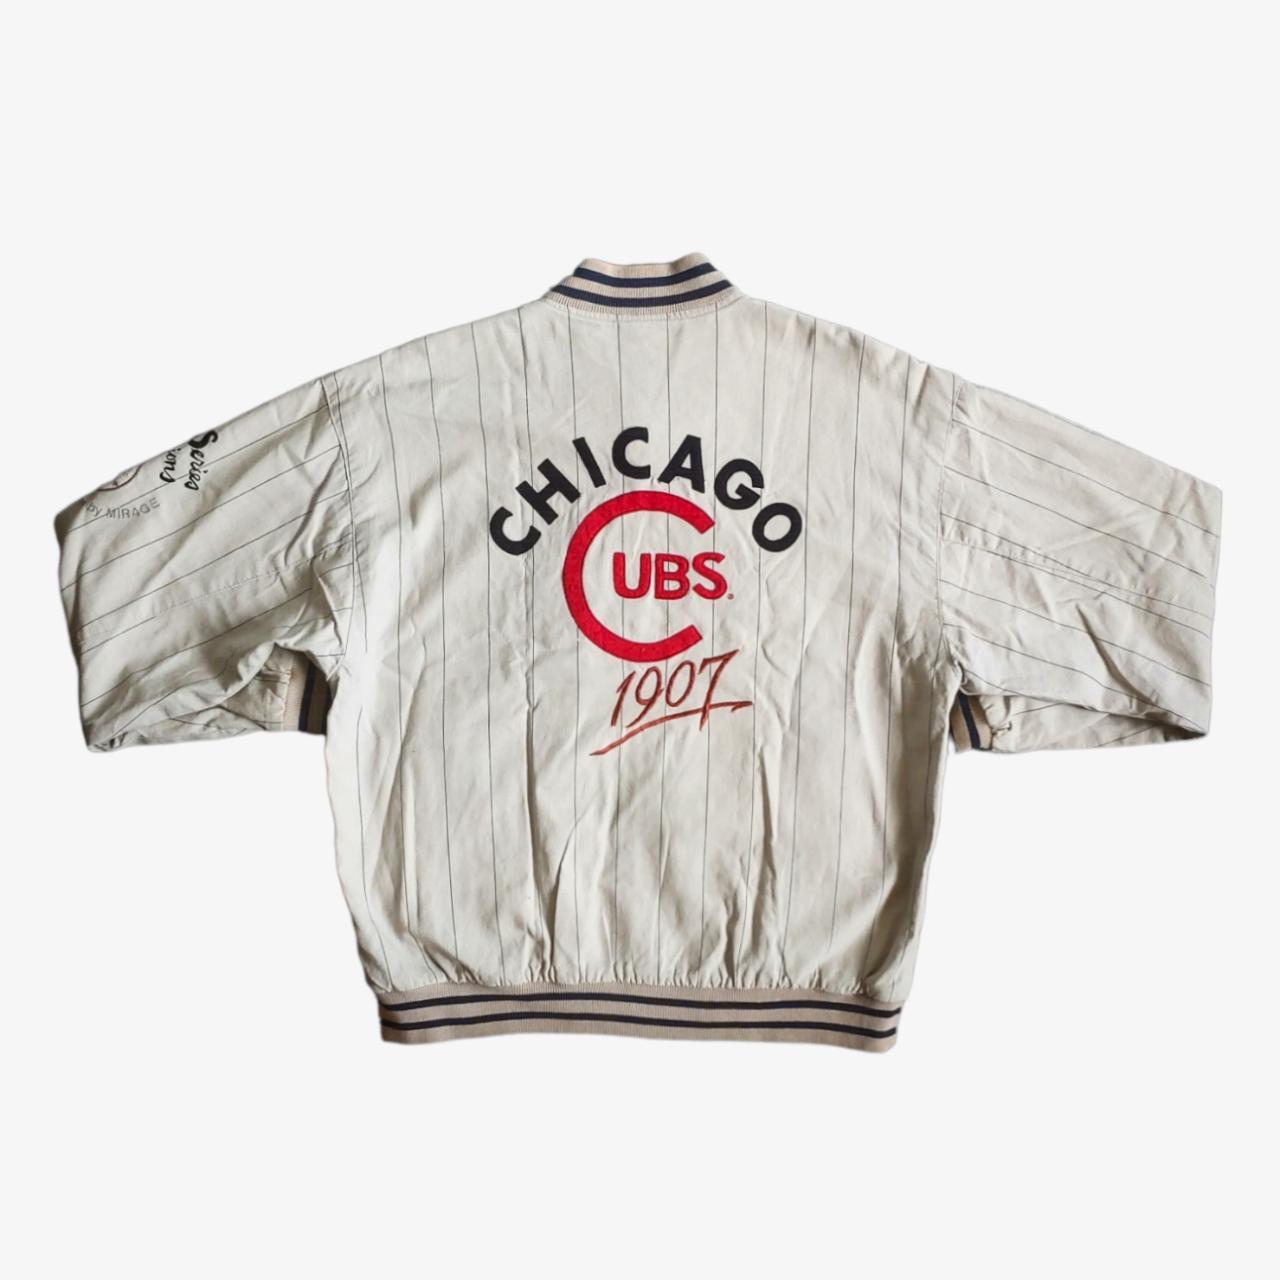 Vintage 90s Mirage First String MLB Chicago Cubs... - Depop